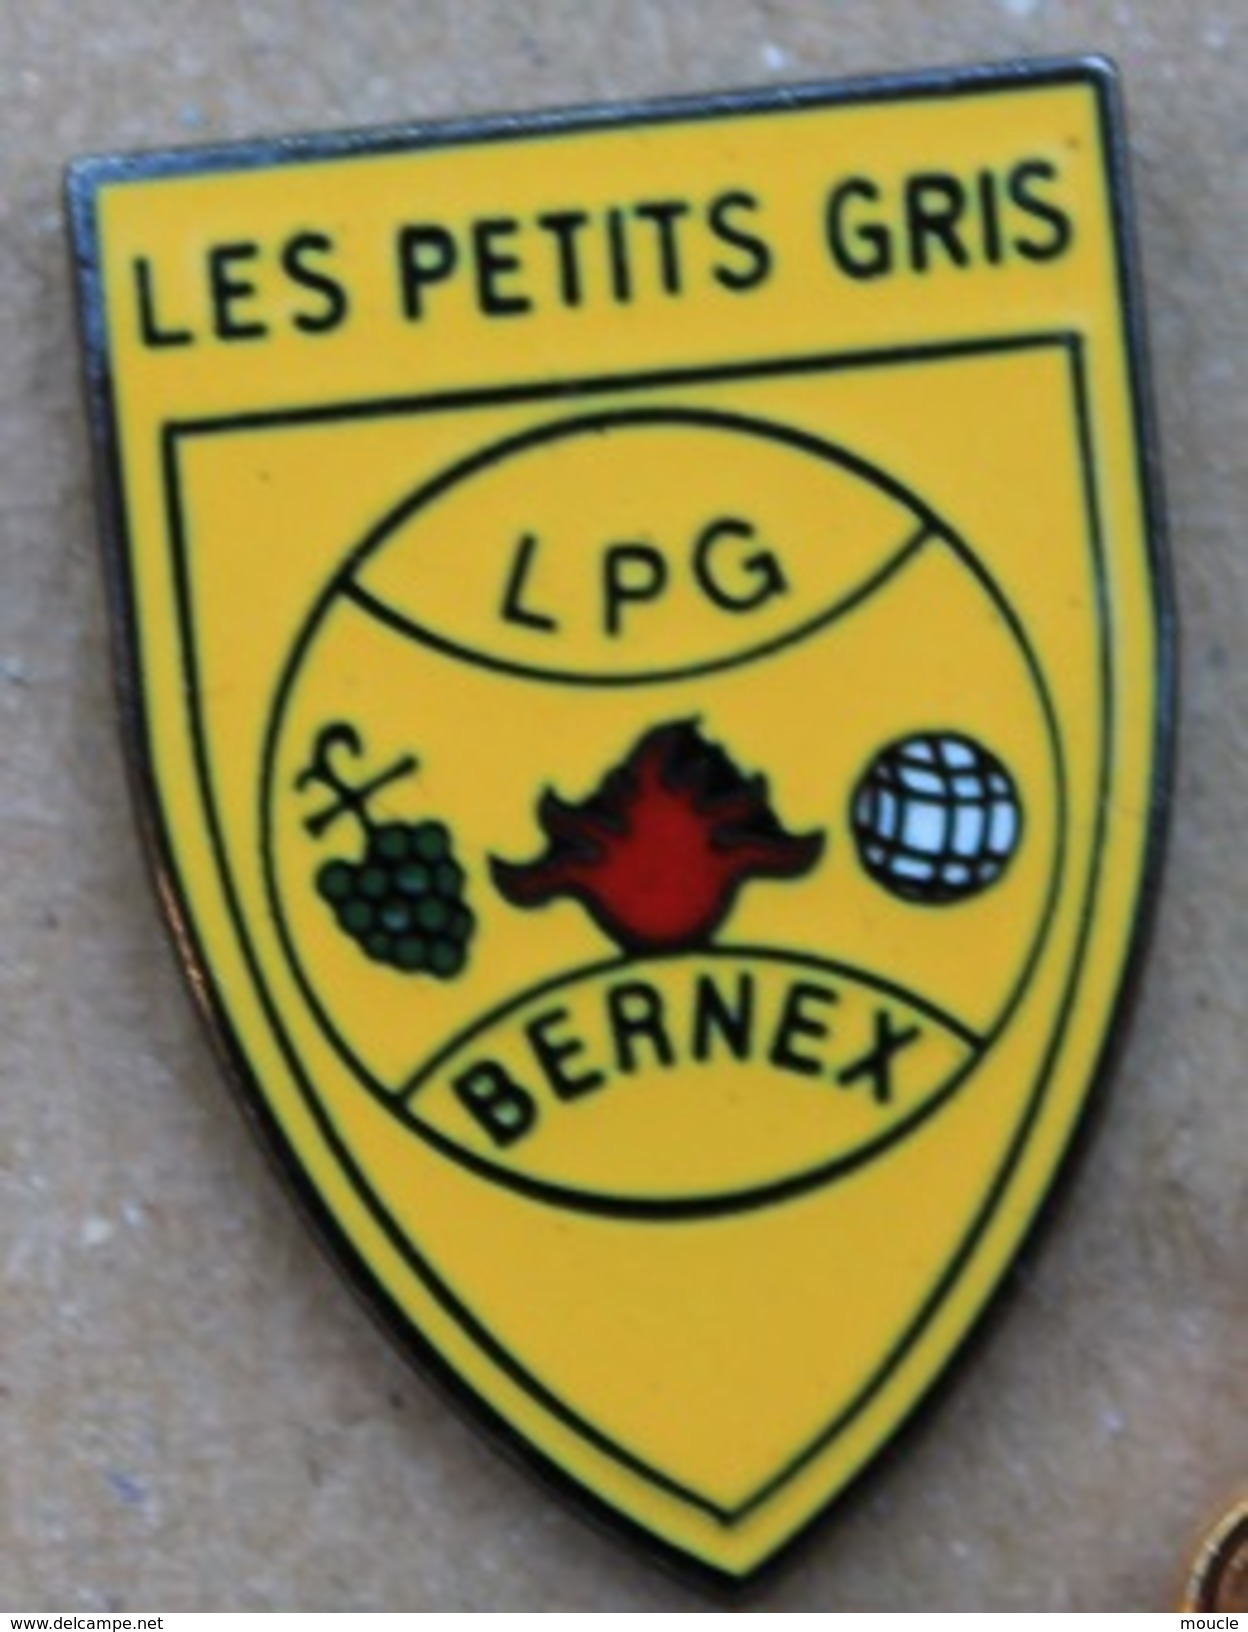 LES PETITS GRIS - LPG - CLUB DE PETANQUE - BERNEX - GENEVE - SUISSE - BOULE - RASINS  -            (ROSE) - Pétanque